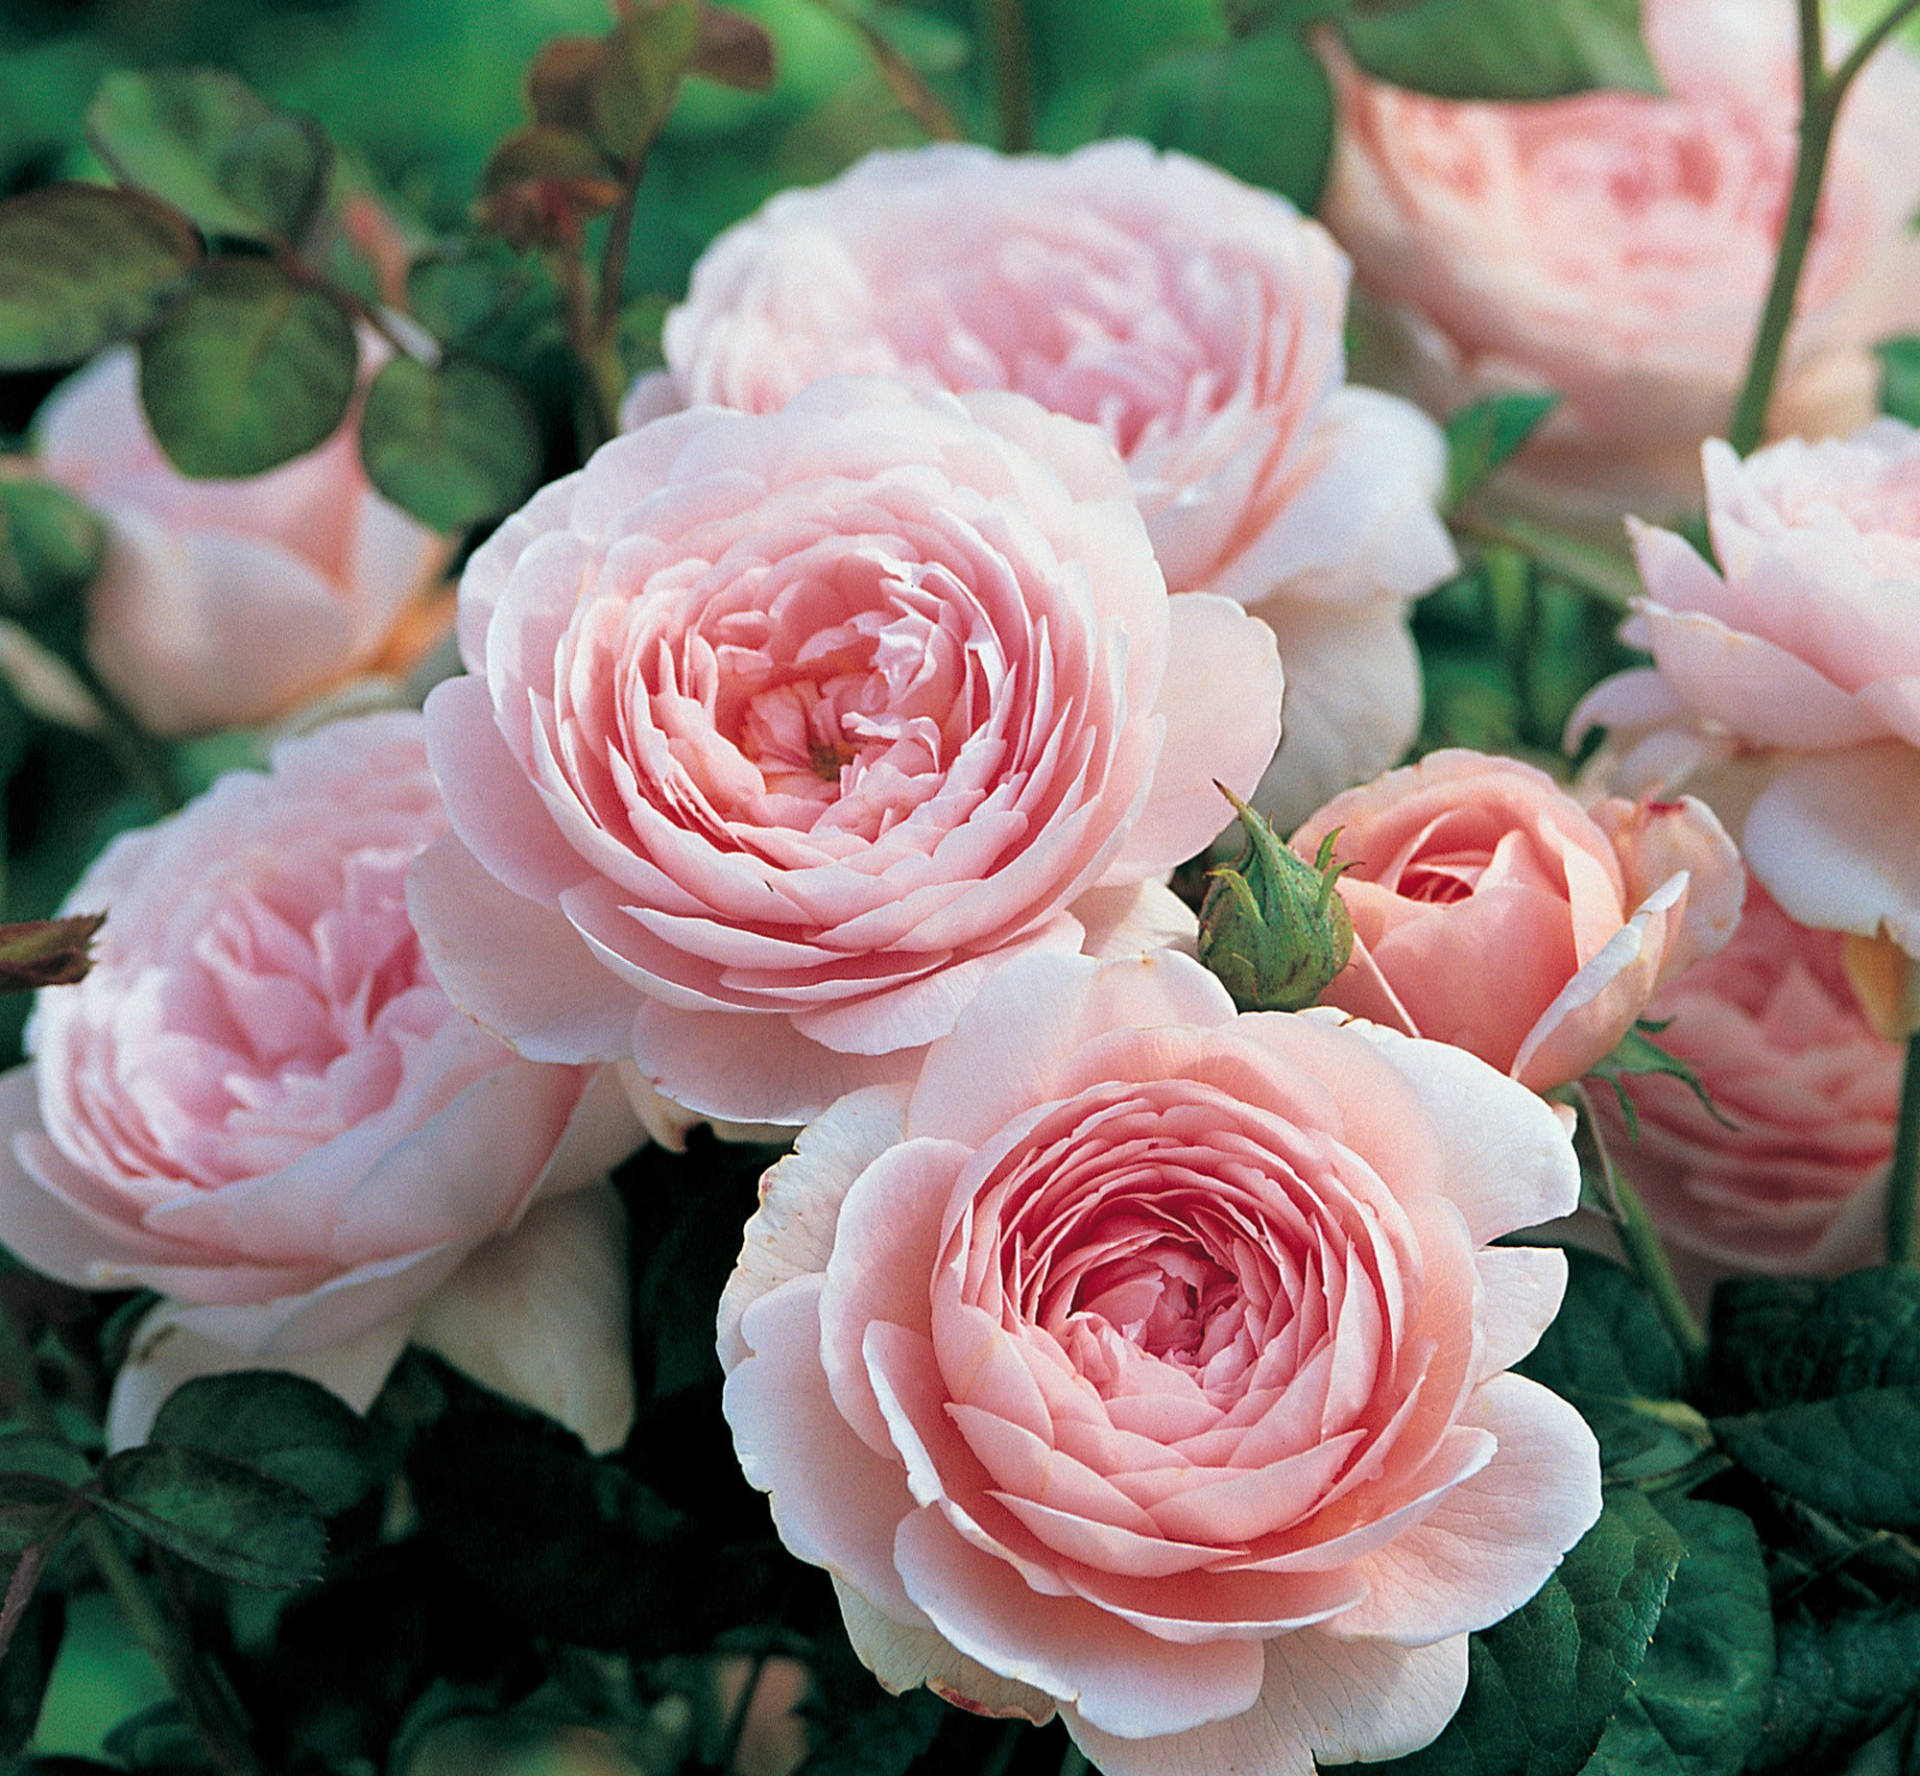 Những ban công đầy hoa hồng tuyệt đẹp giờ không còn là ao ước nữa, bạn hoàn toàn có thể tự tay trồng chúng